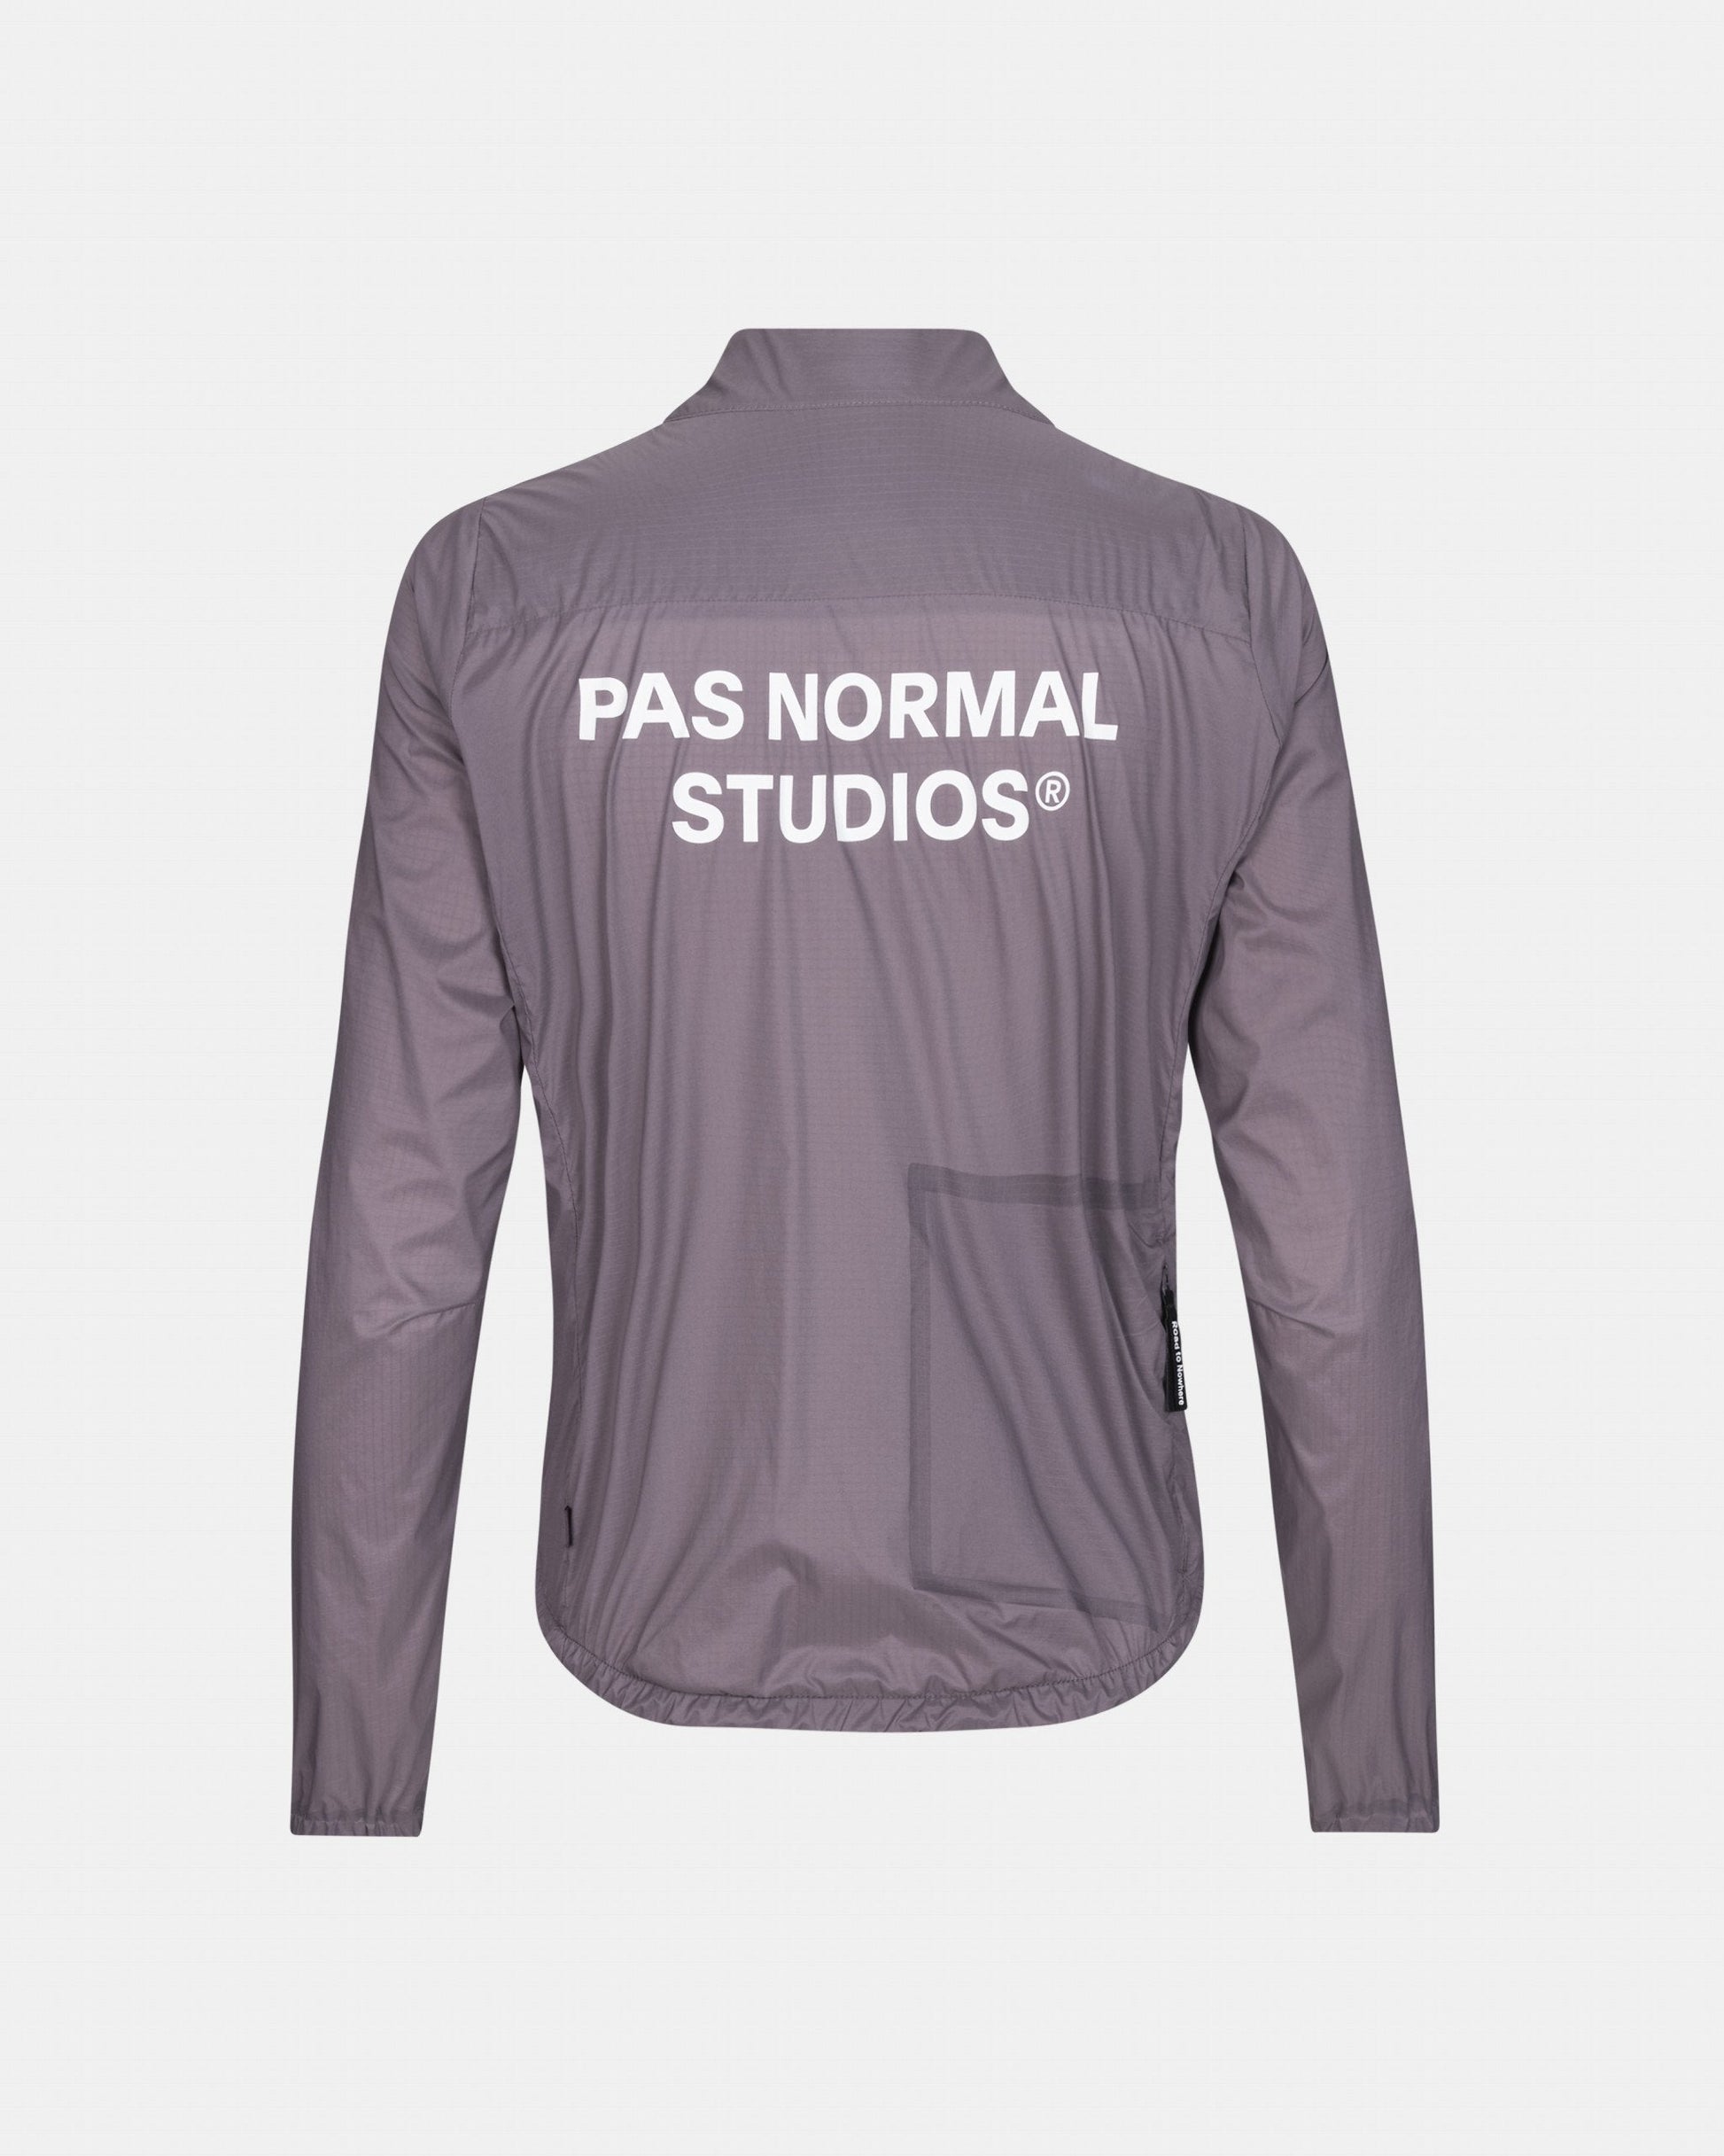 Pas Normal Studios - Manteau Essential Insulated Femme Manteaux Pas Normal Studios 